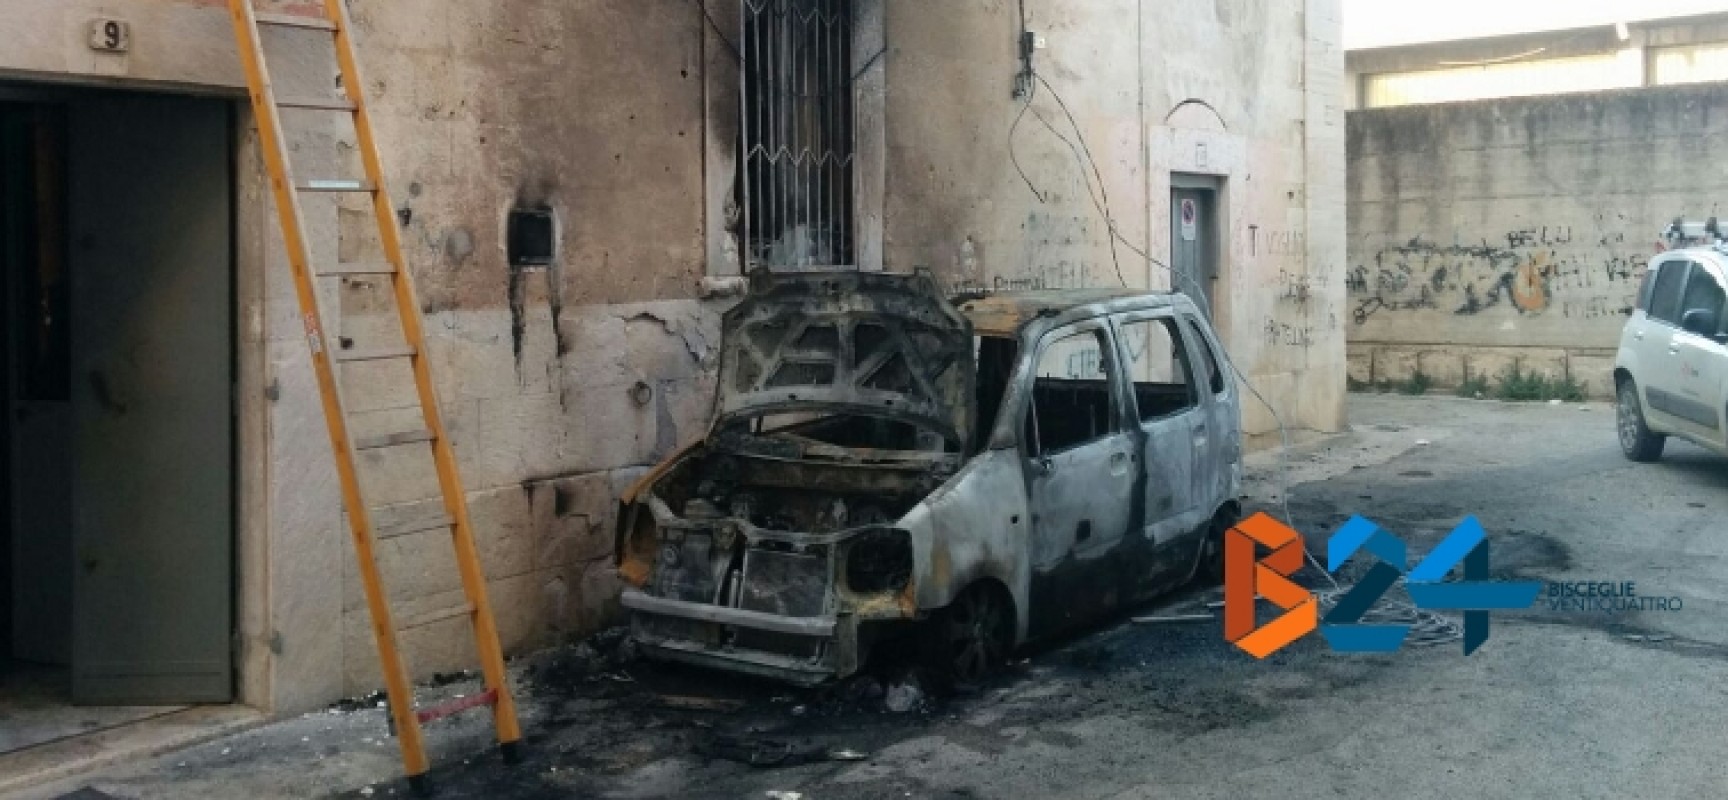 Auto prende fuoco in via Varese alle prime luci dell’alba, danneggiata palazzina / FOTO